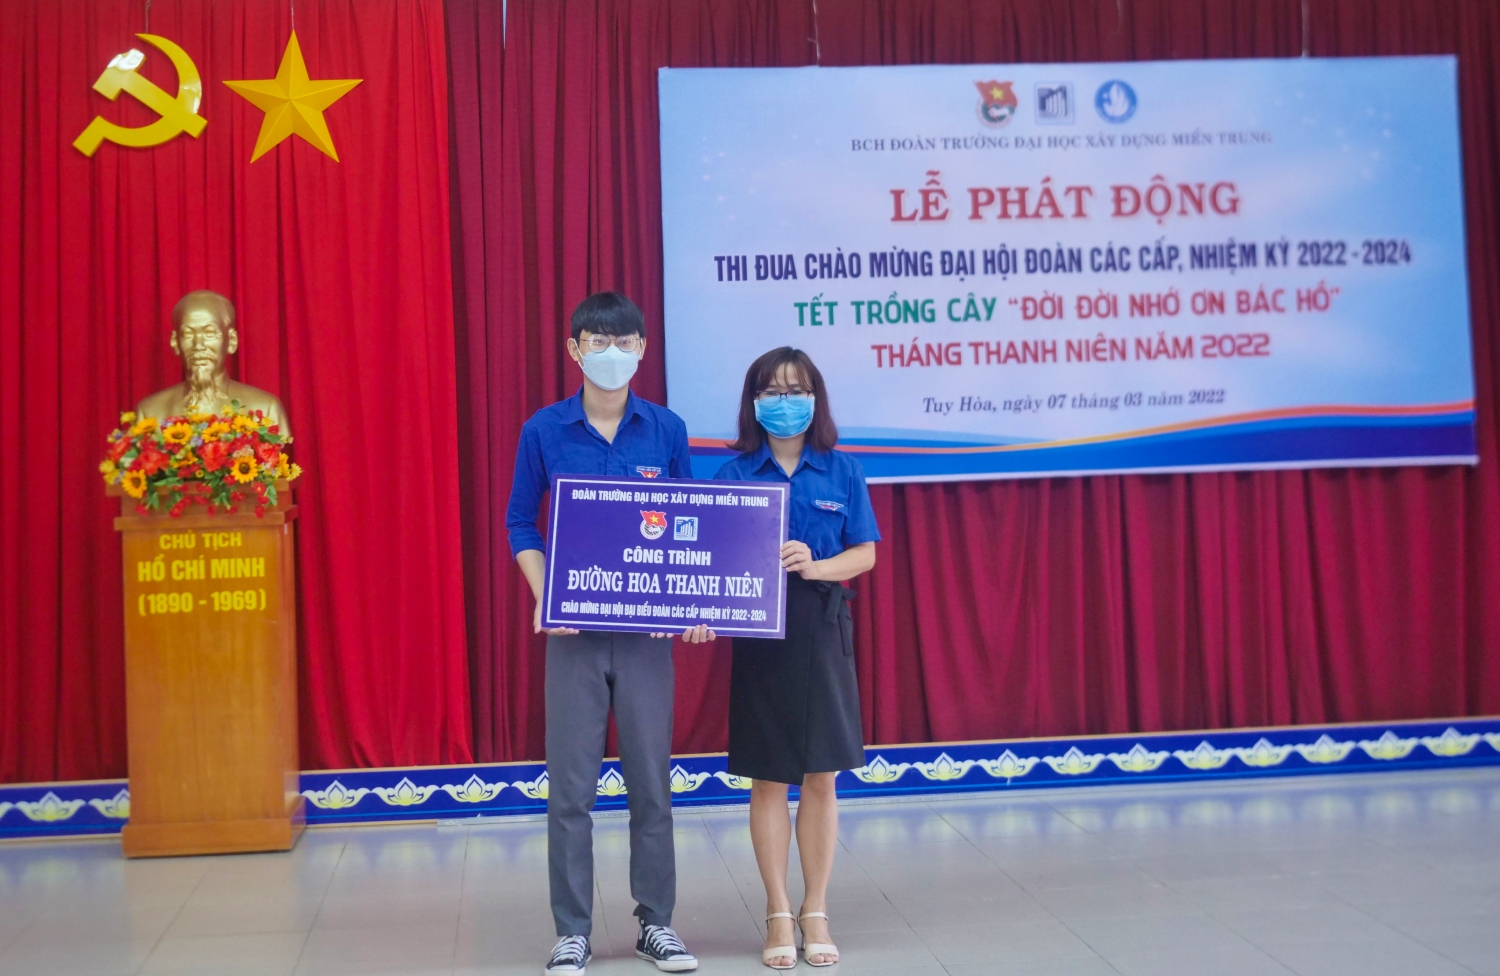 Đồng chí Nguyễn Thị Thu Trang trao bảng tượng trưng thực hiện công trình “Vườn hoa thanh niên” cho Liên chi đoàn khoa Xây dựng.